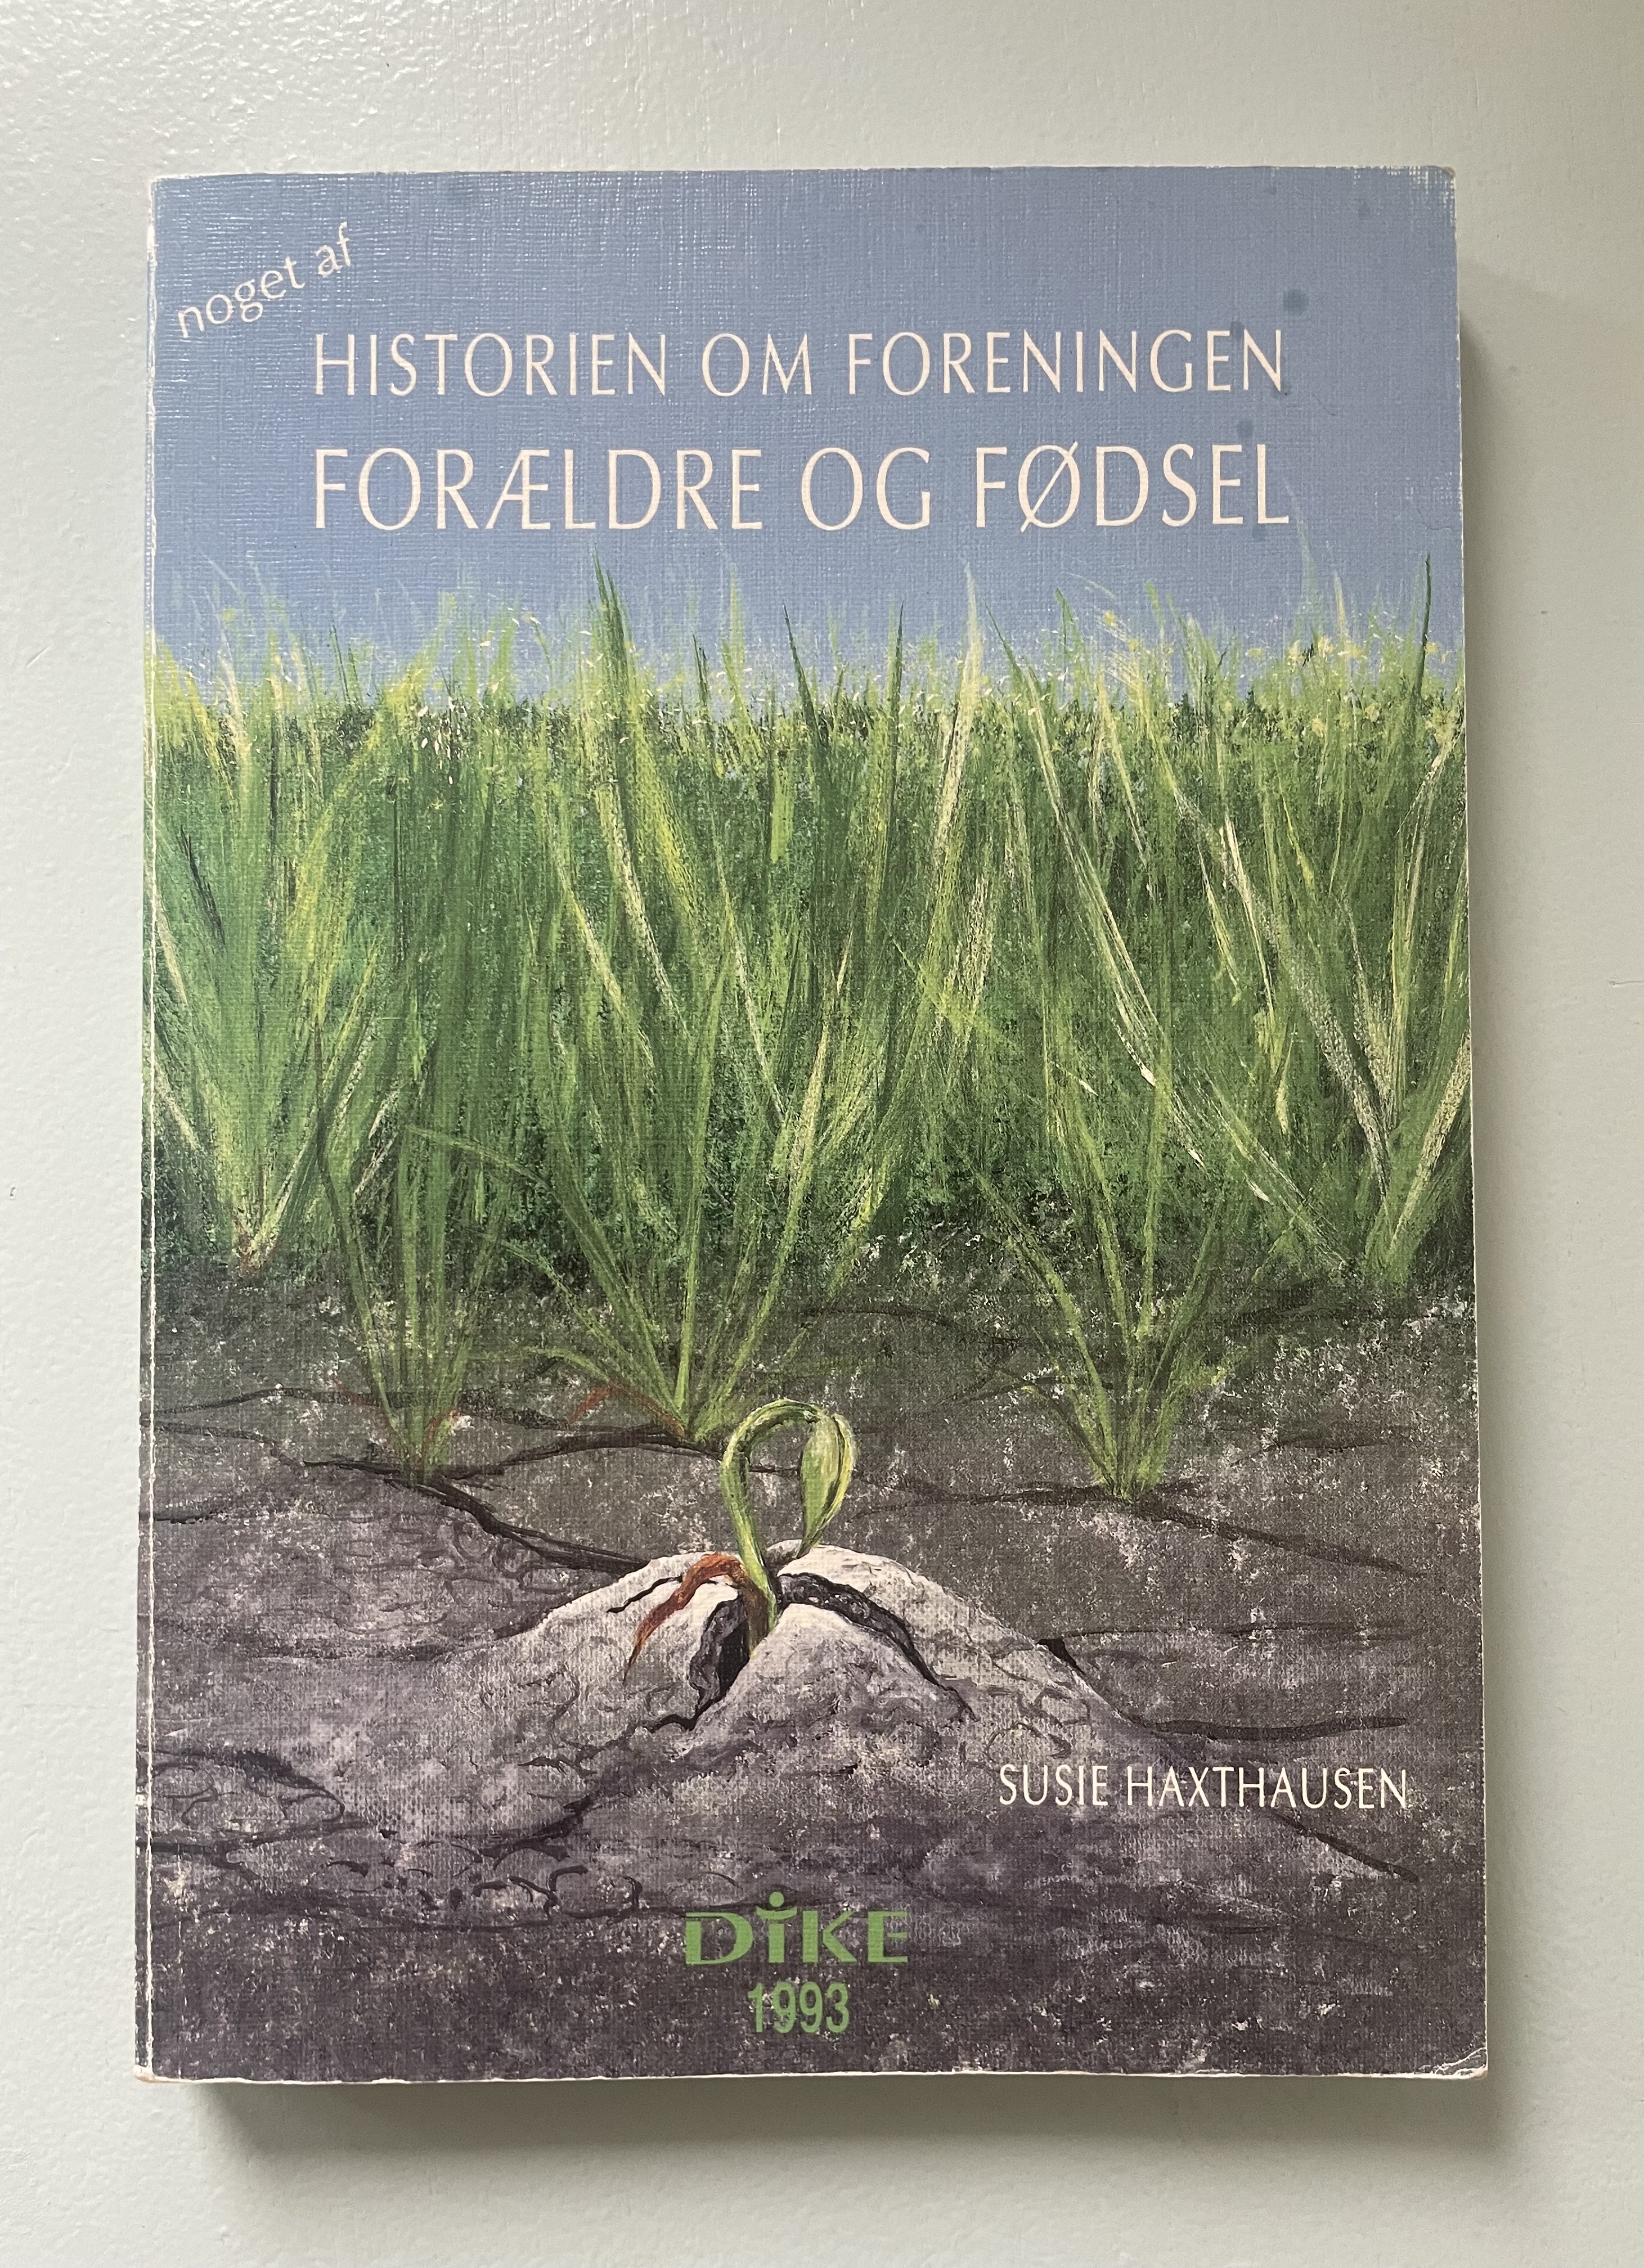 I 1993 blev bogen "Noget af historien om foreningen Forældre og Fødsel" udgivet. Bogen er skrevet af Susie Haxthausen, medstifter af foreningen, og beskriver de første 20 år af foreningens virke.